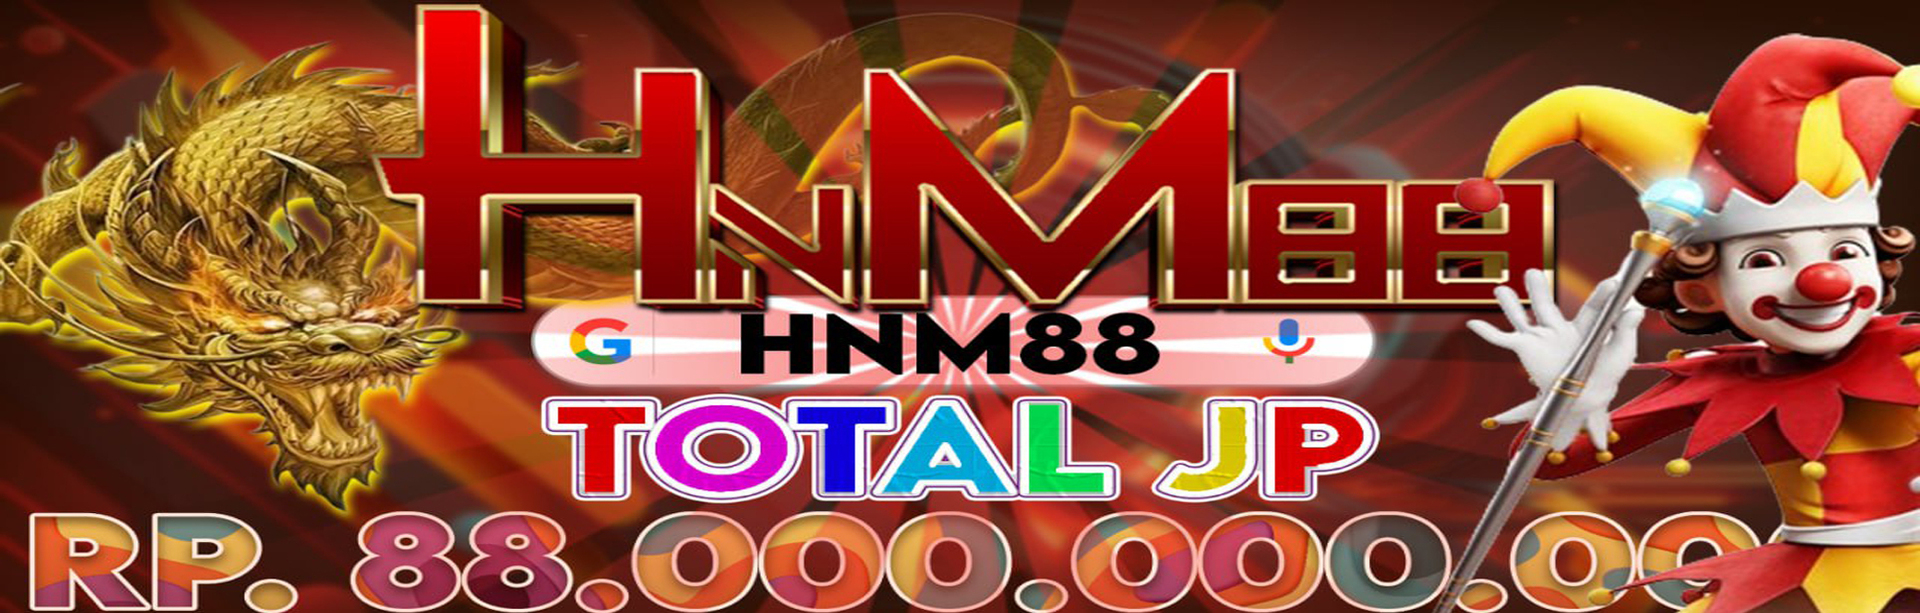 hnm88